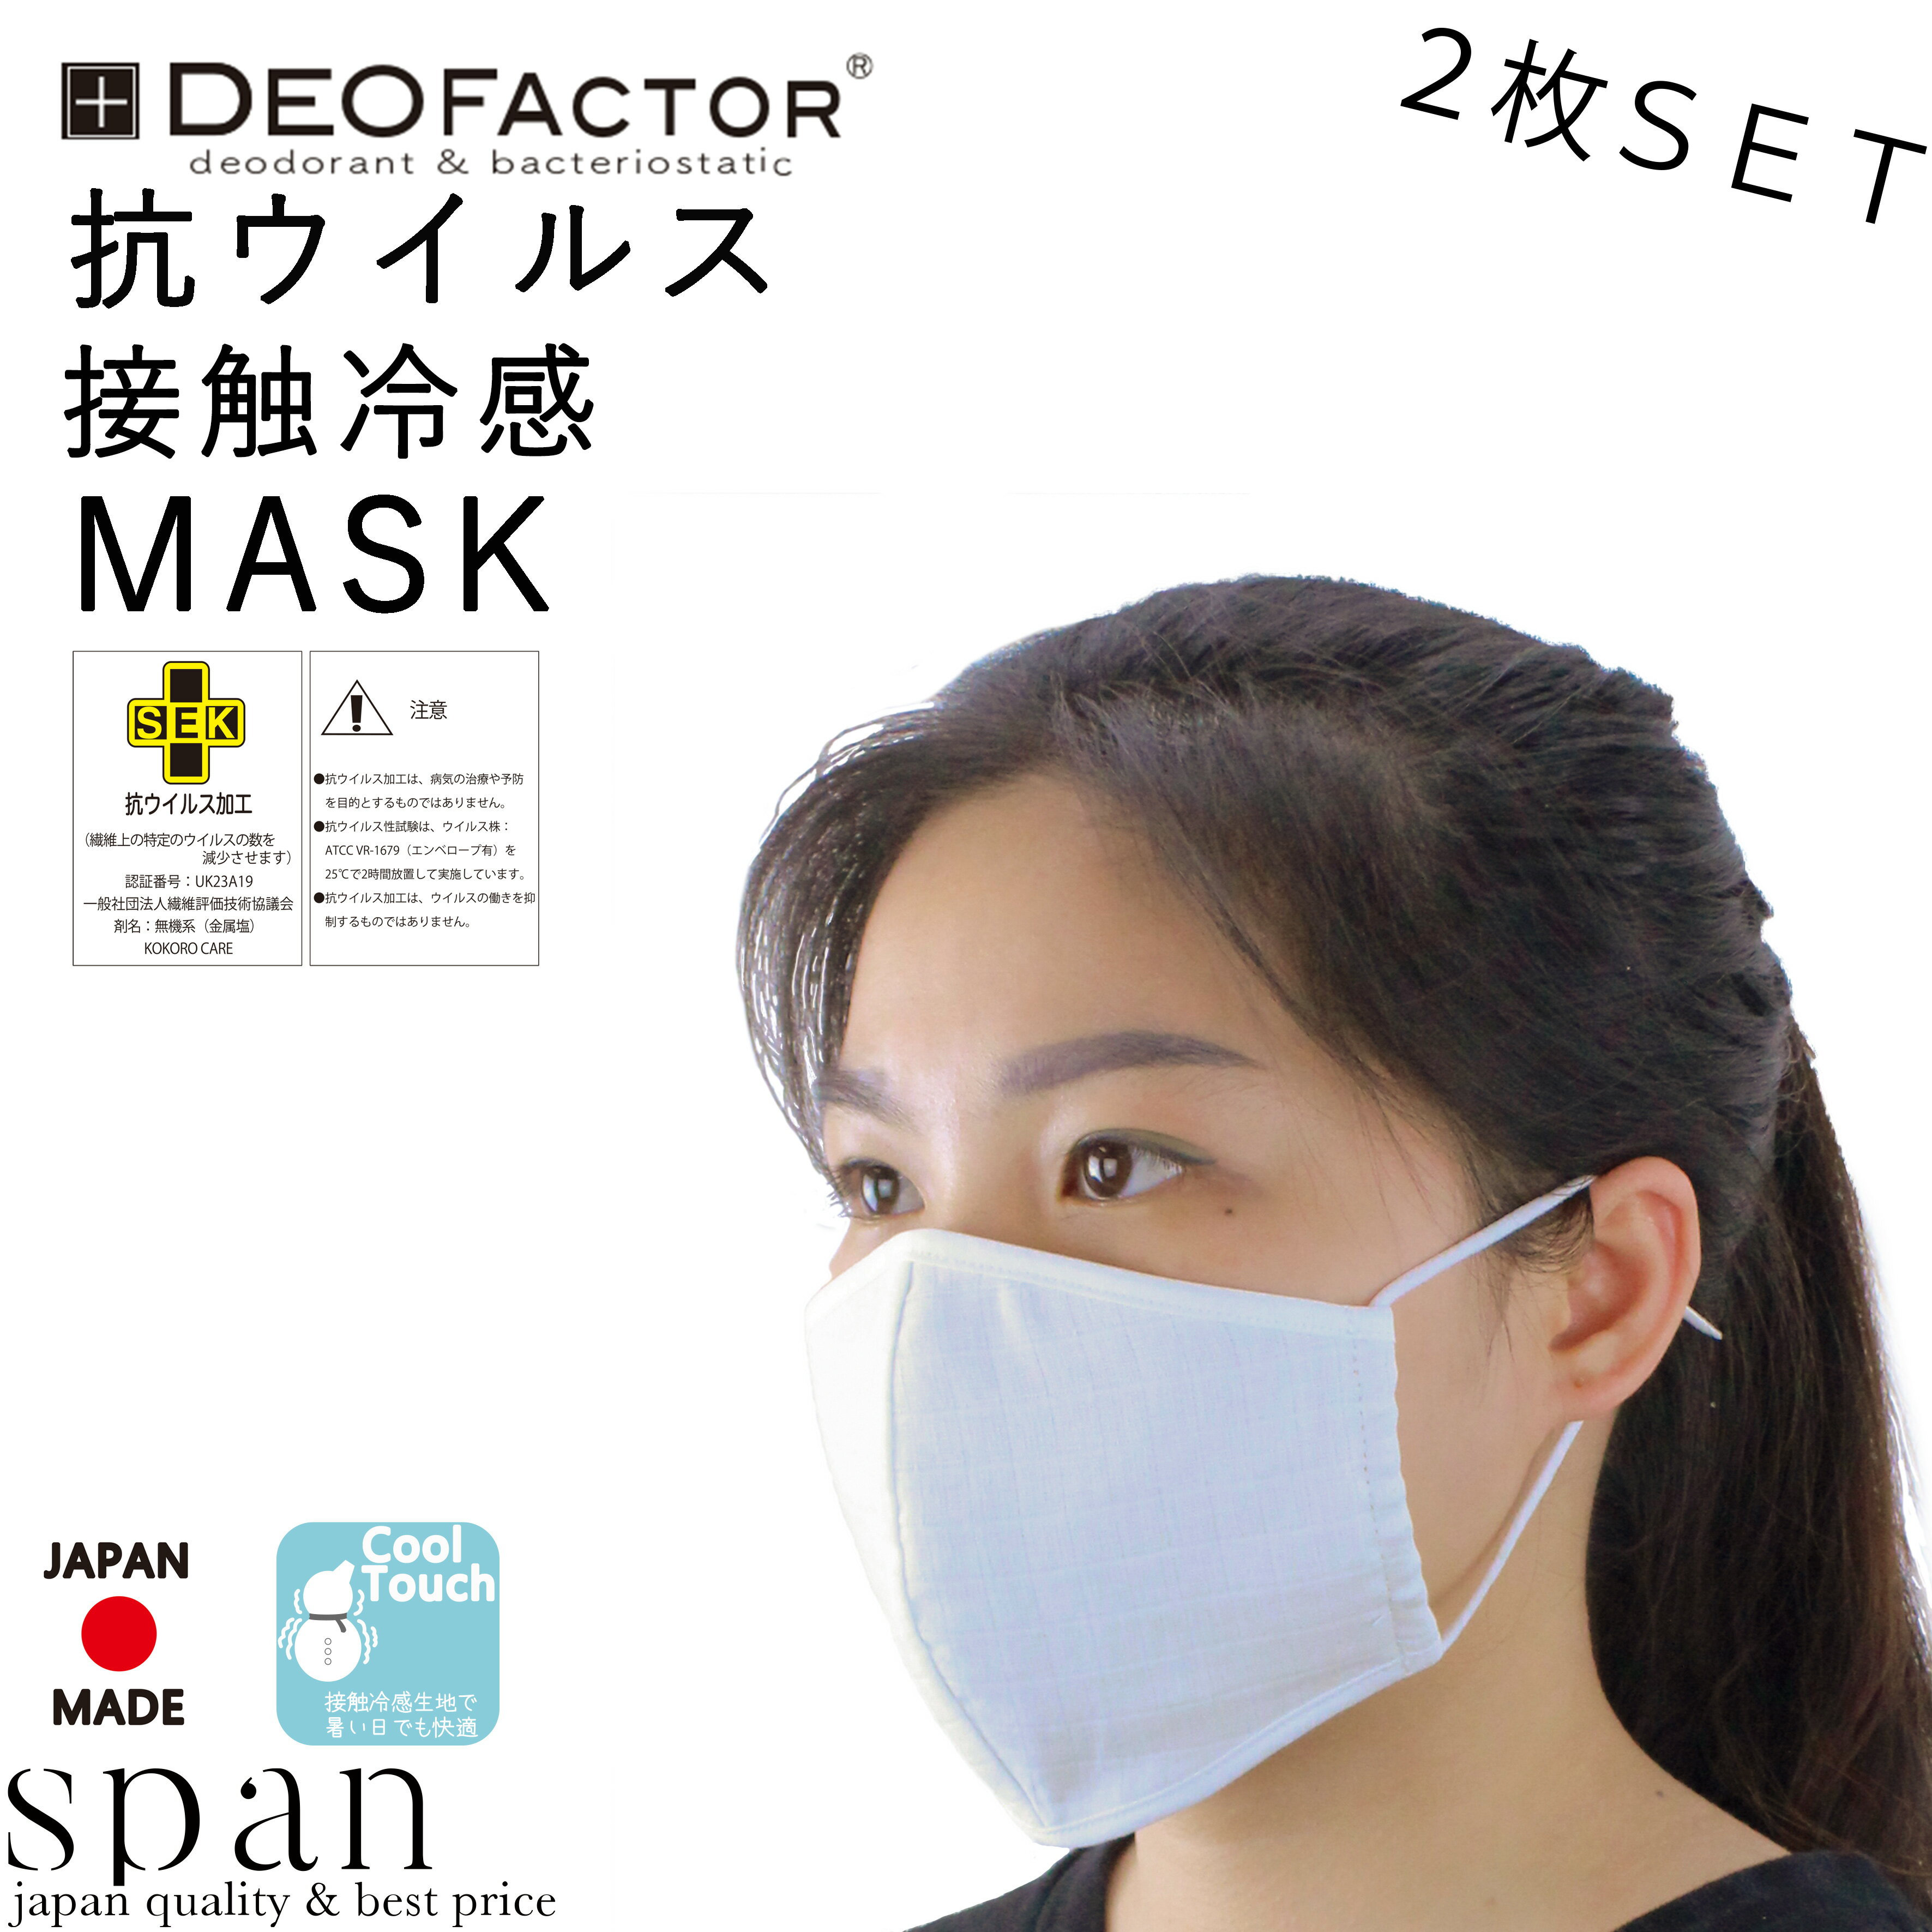 【抗ウイルス、接触冷感生地】抗ウイルスチェック生地+接触冷感生地を使用した、洗えるマスク【日本製】